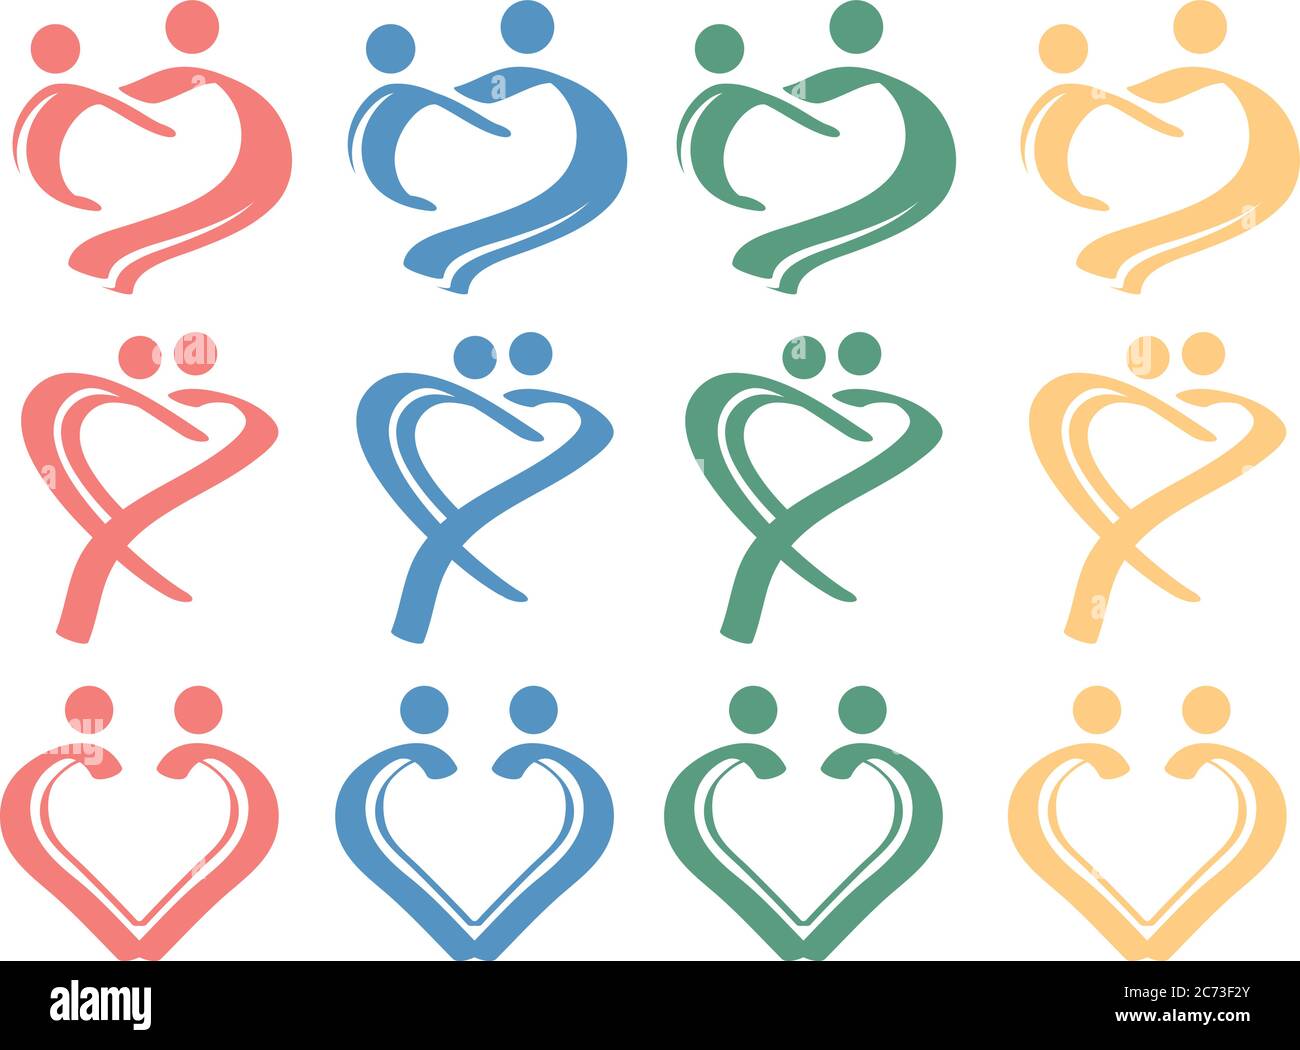 Einfache Pinselstriche bilden eine Herzform, um Menschen in liebevoller Beziehung zu repräsentieren. Symbolsatz Für Konzeptuelle Vektorgrafik. Stock Vektor